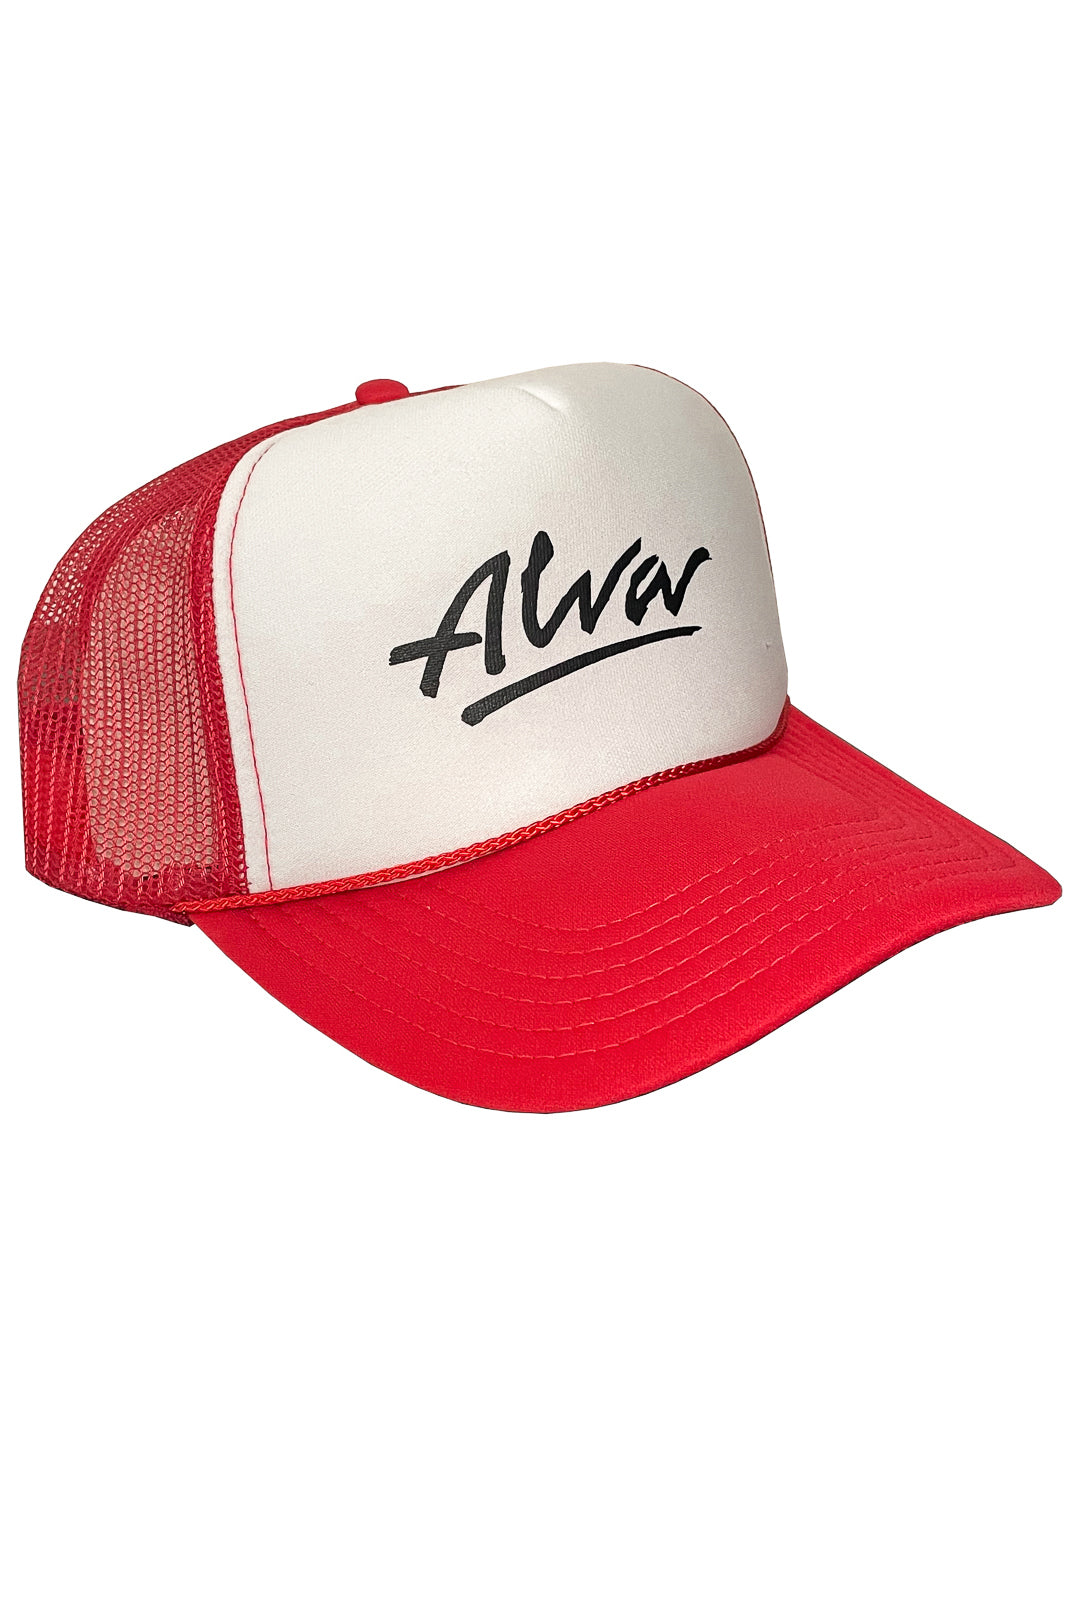 ALVA RED & WHITE OG LOGO TRUCKER HAT